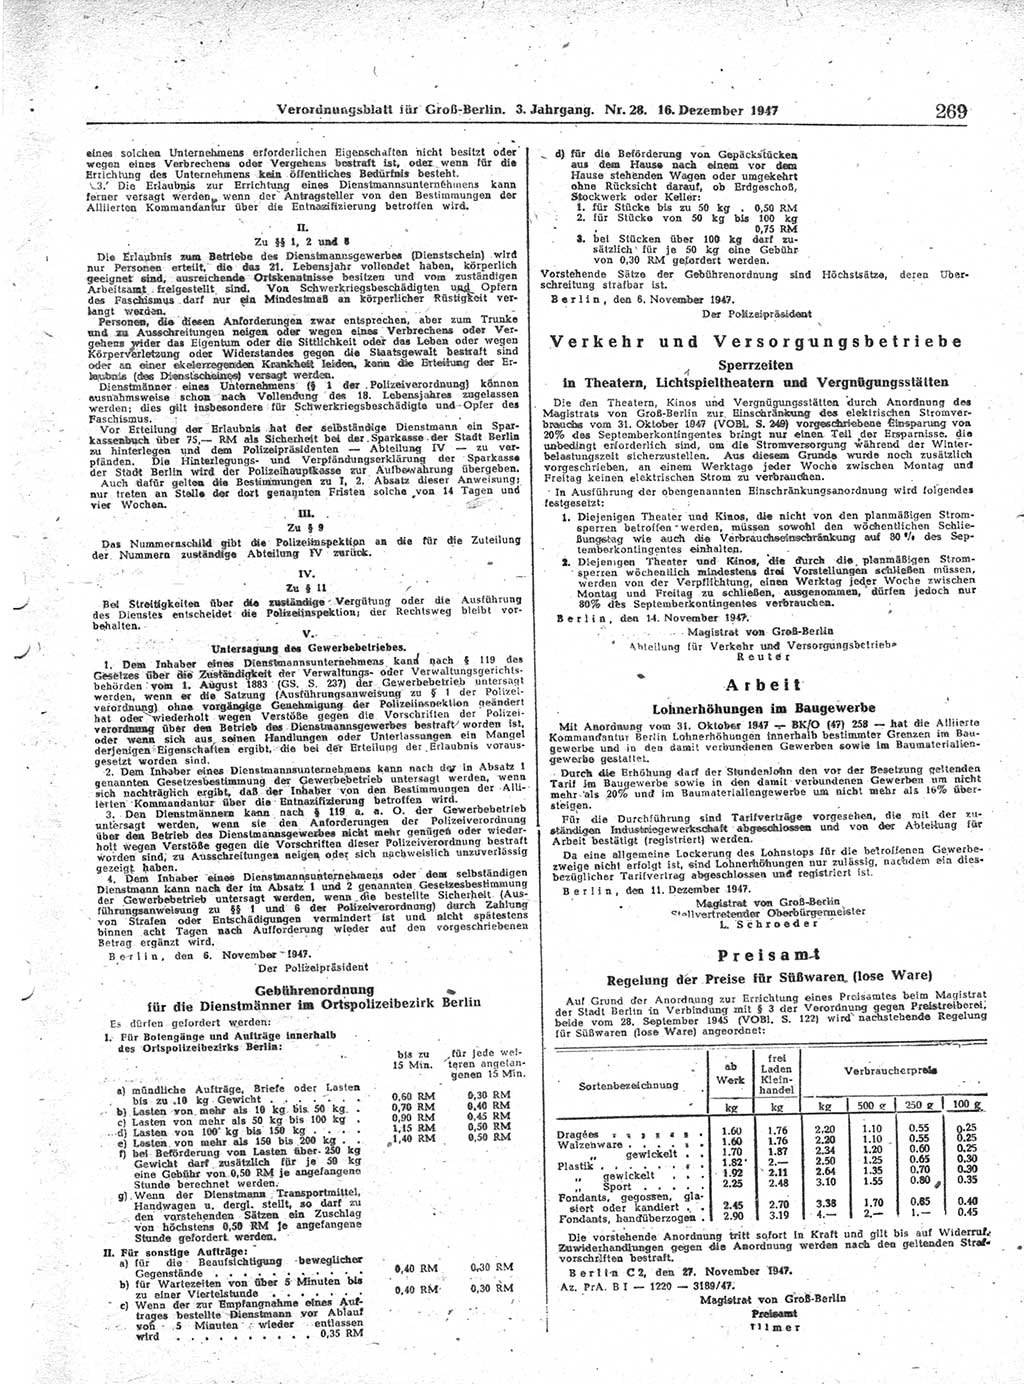 Verordnungsblatt (VOBl.) für Groß-Berlin 1947, Seite 269 (VOBl. Bln. 1947, S. 269)